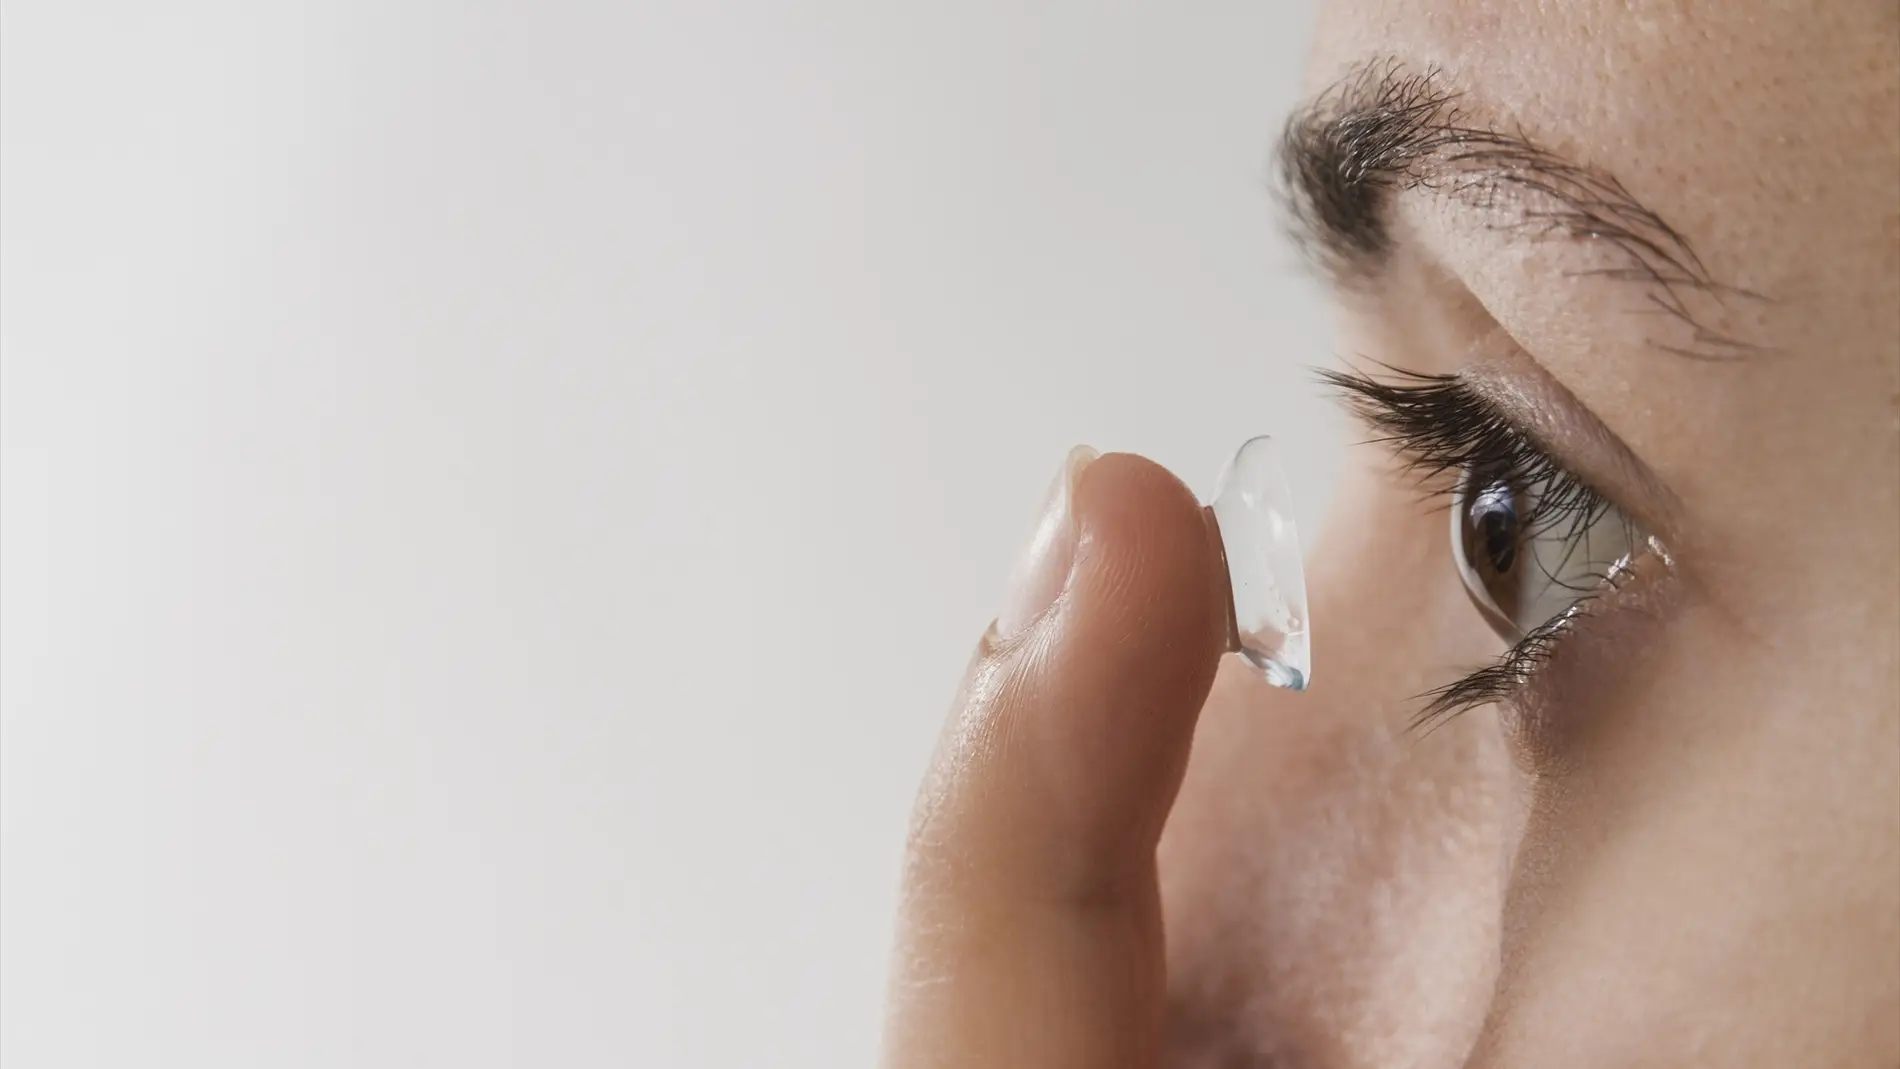 Estos son los peligros asociados al mal uso de las lentillas